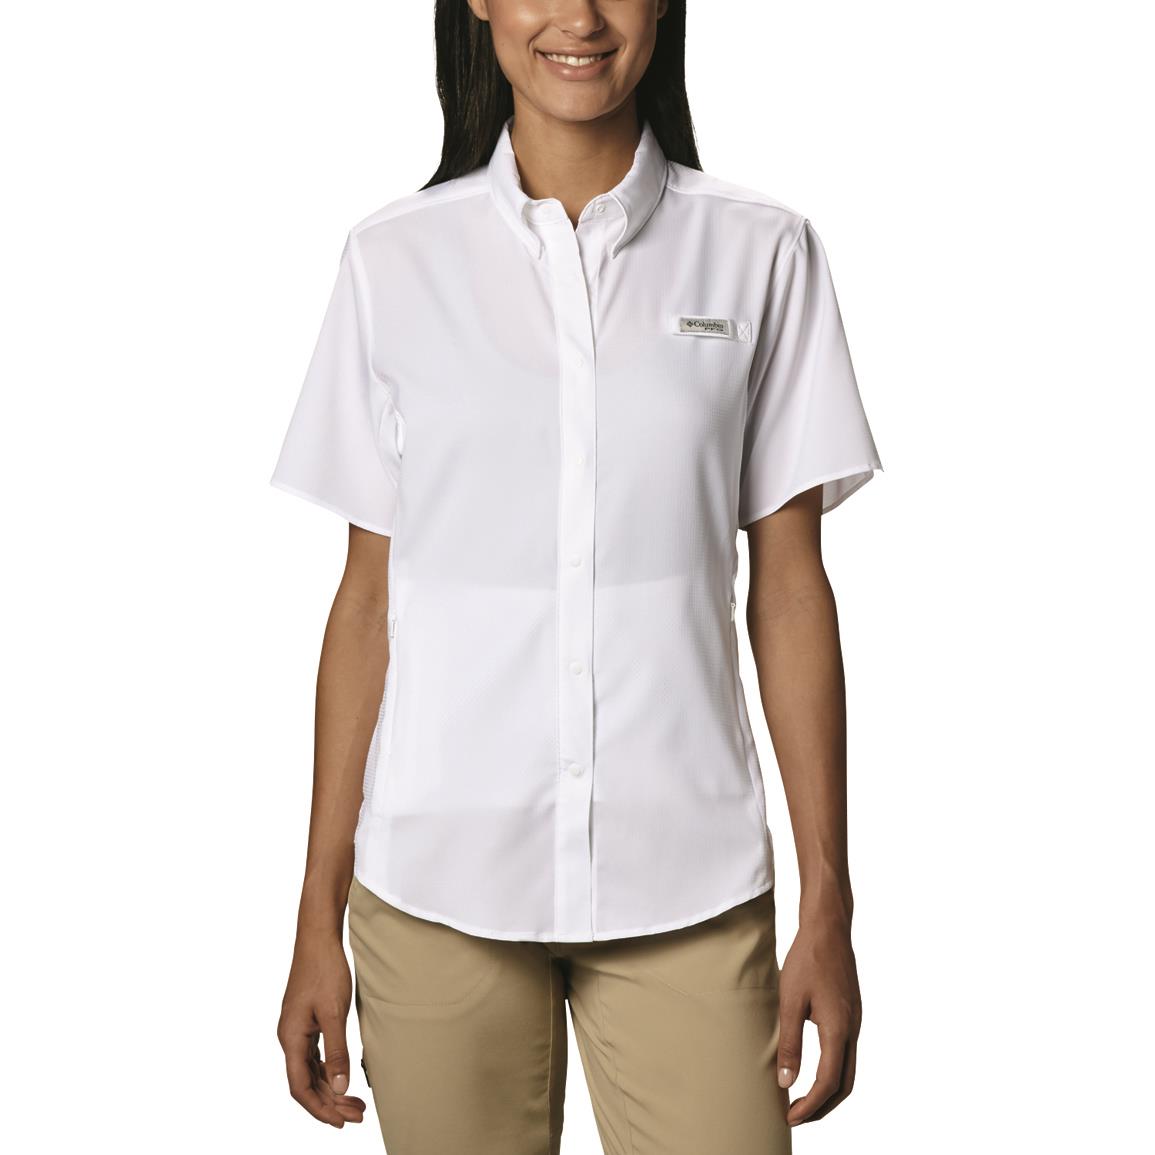 Columbia Women's PFG Tamiami II Short Sleeve Shirt, White Cap